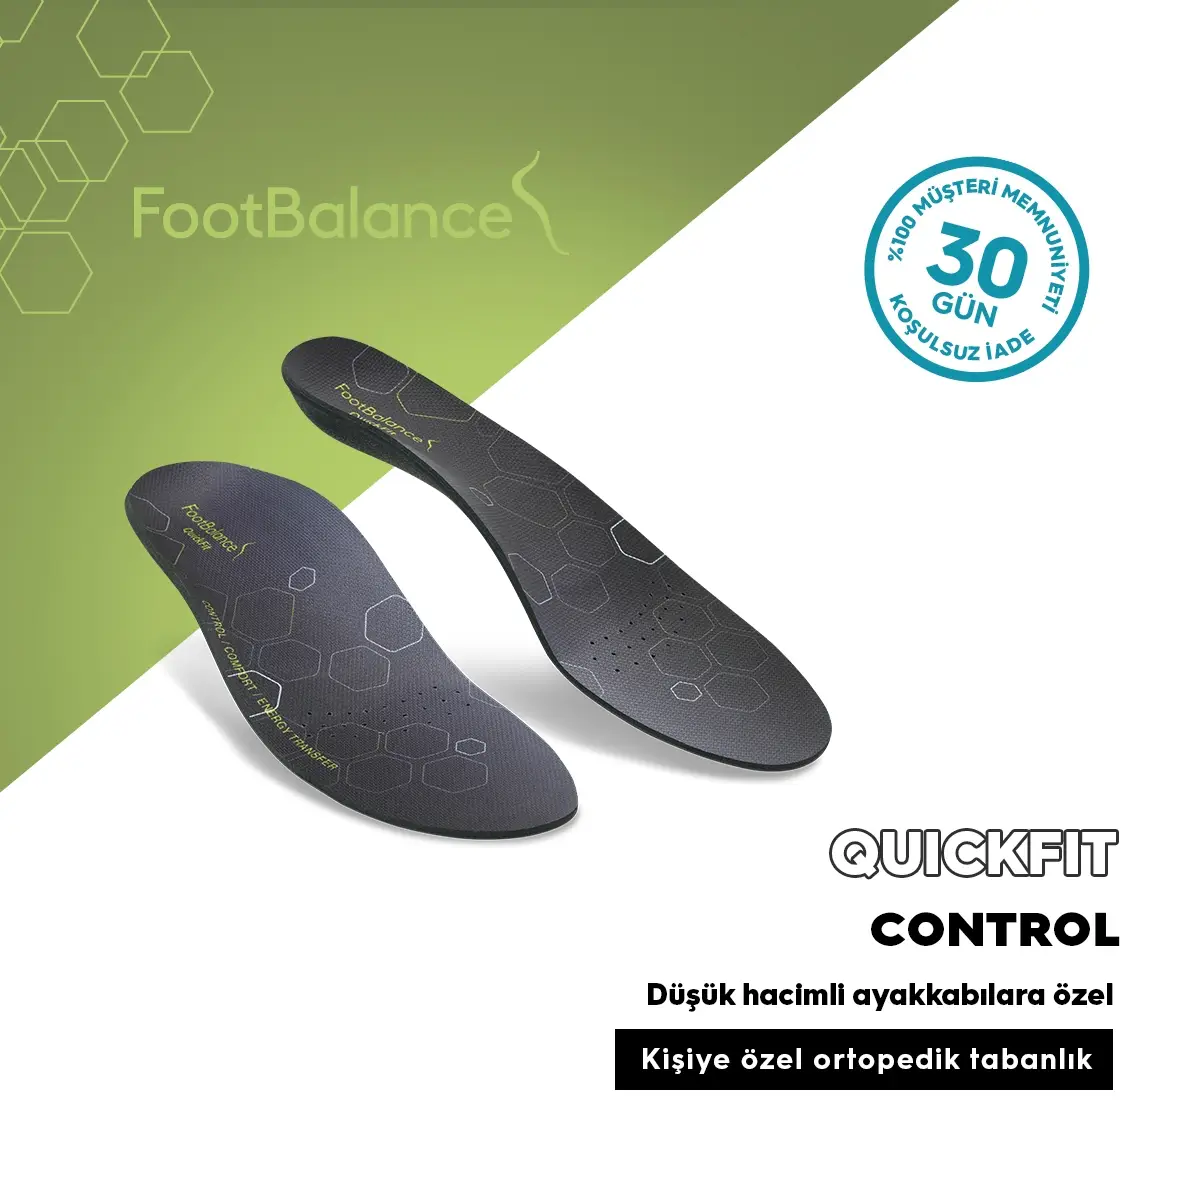 FootBalance QuickFit Control Kisiye Özel Ortopedik Tabanlık